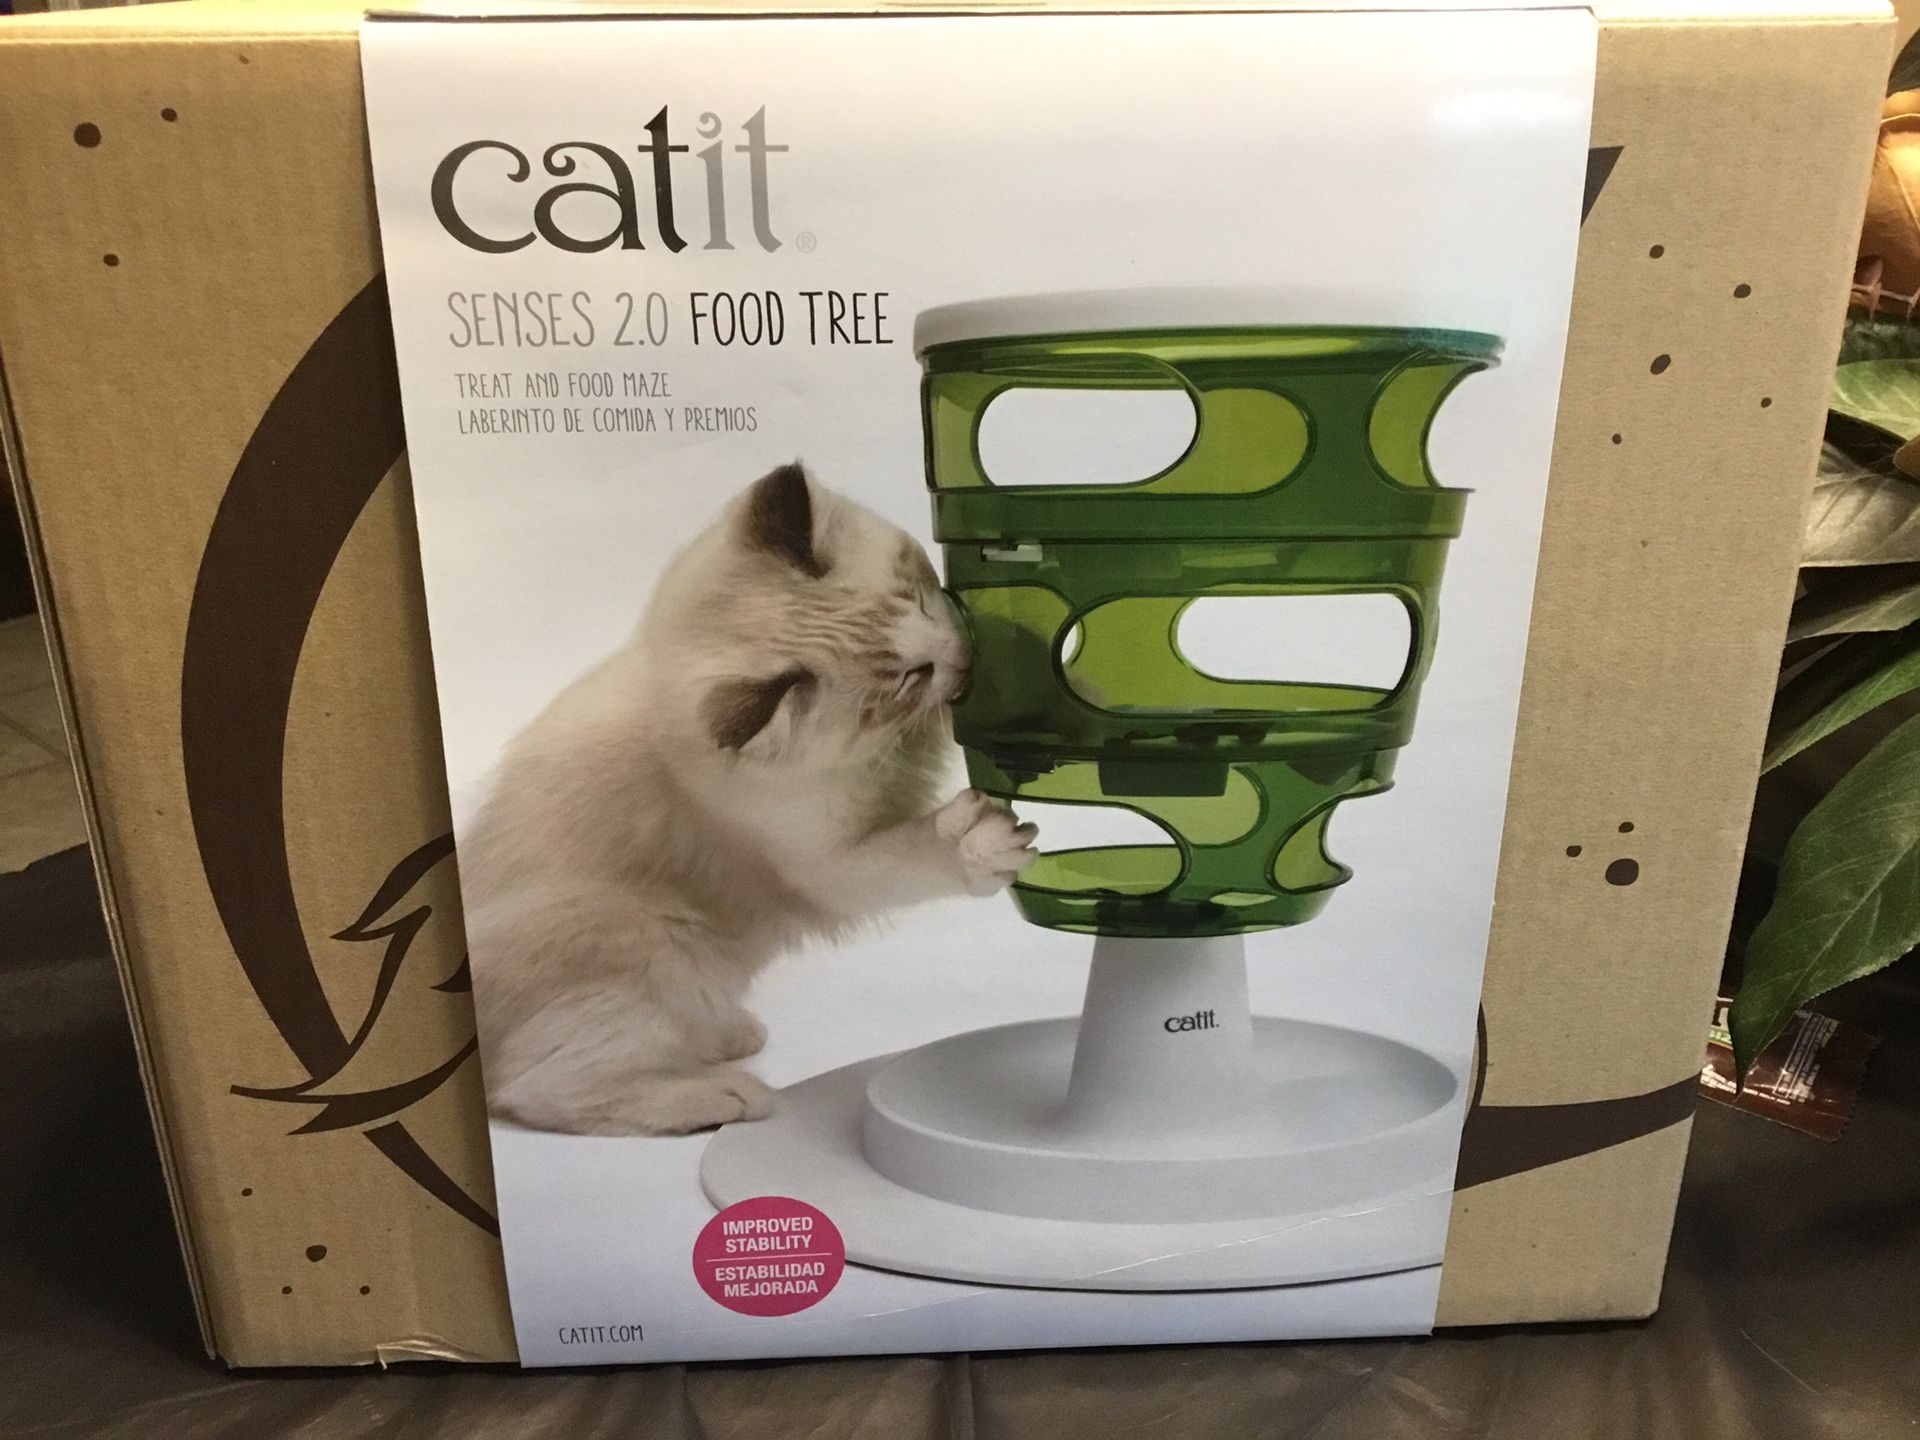 Catit Senses 2.0 Food Tree Pet Feeder